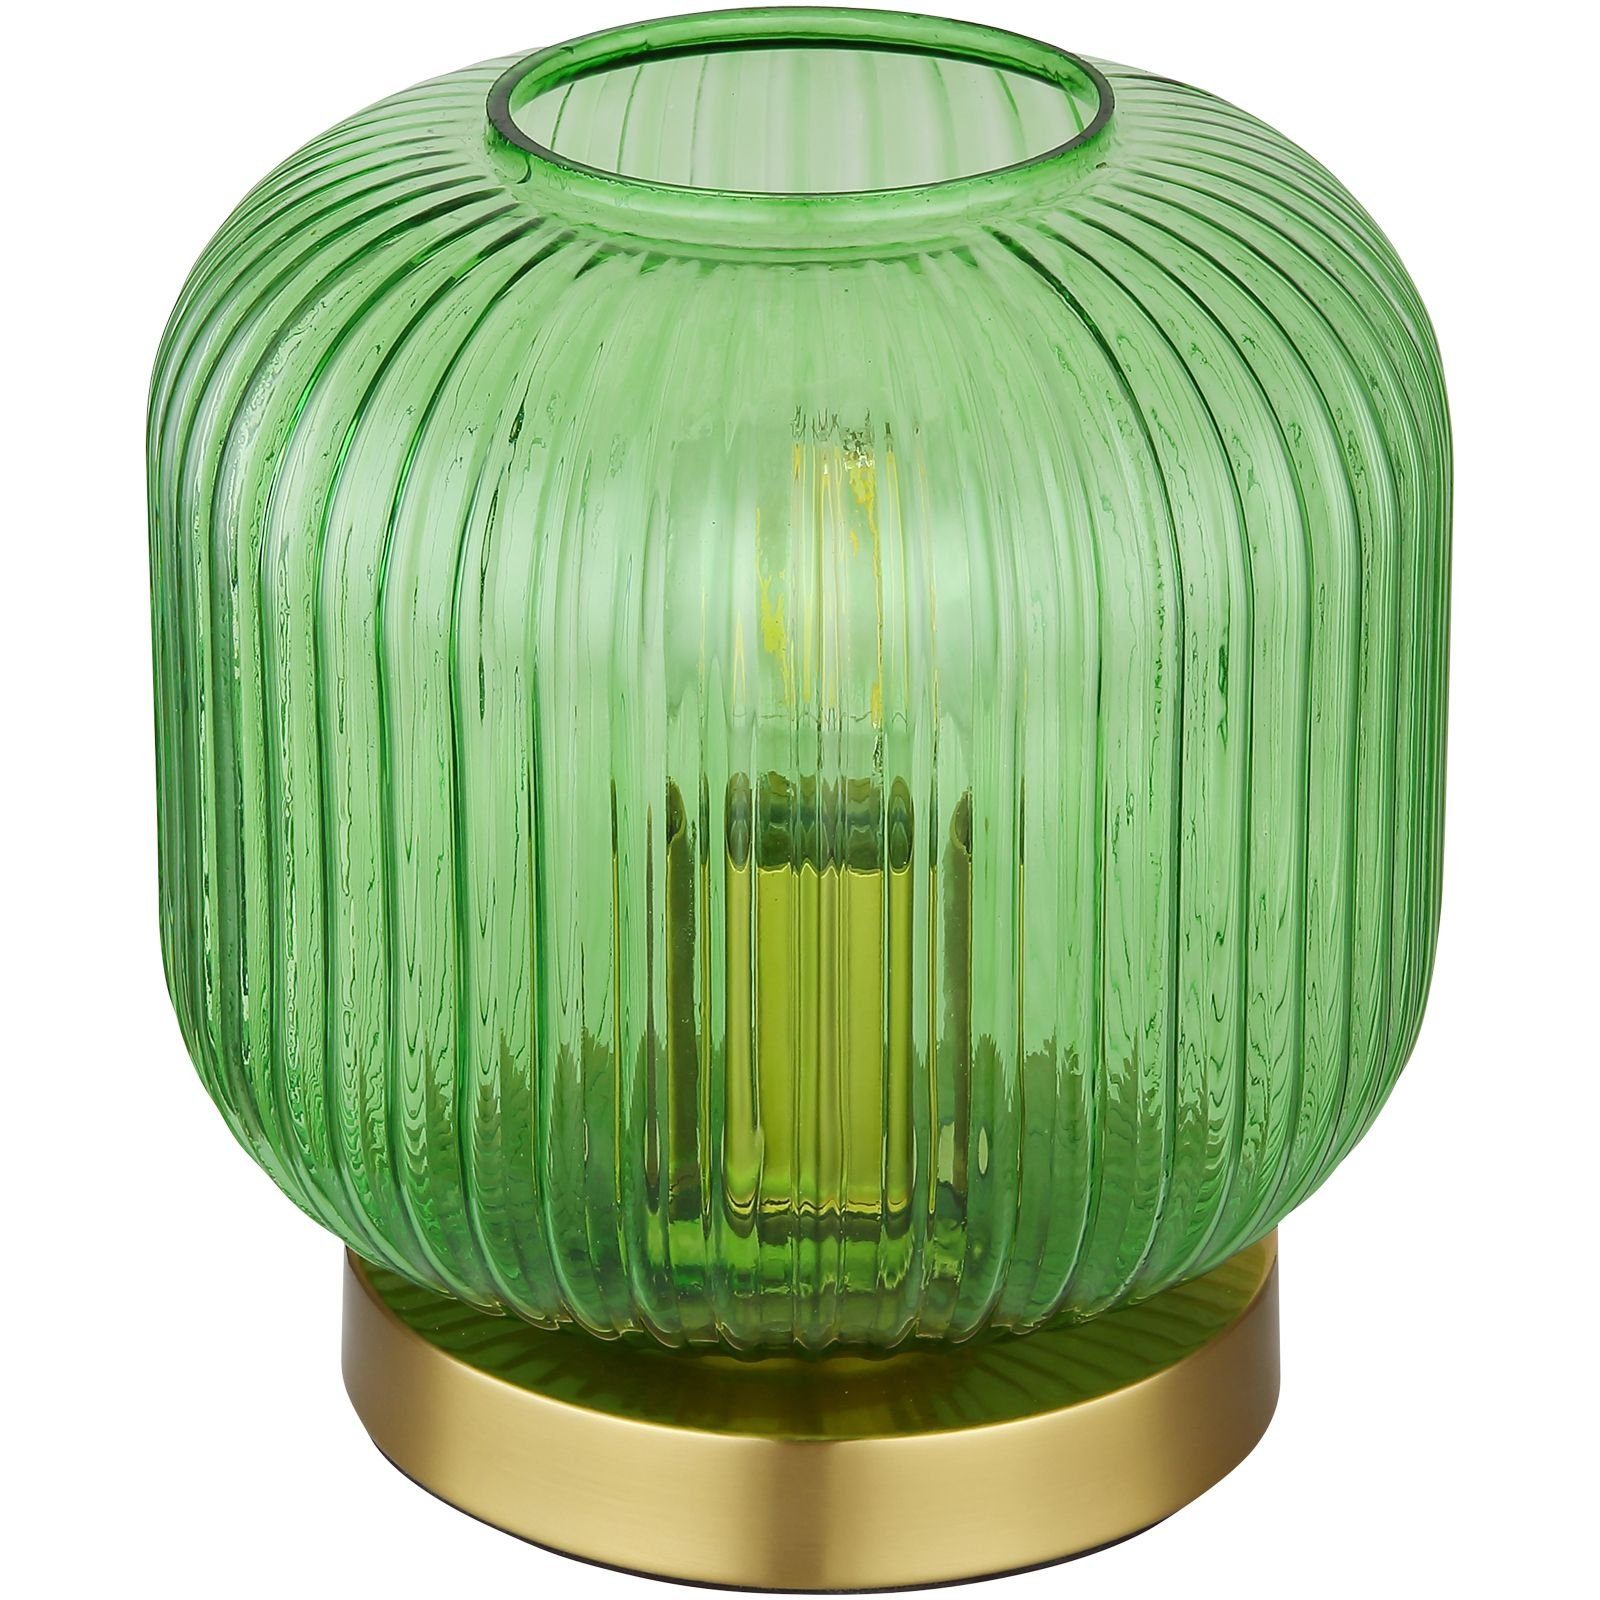 Messing Tischlampe Tischleuchte Globo Retro Wohnzimmer Tischleuchte Grün GLOBO Glas